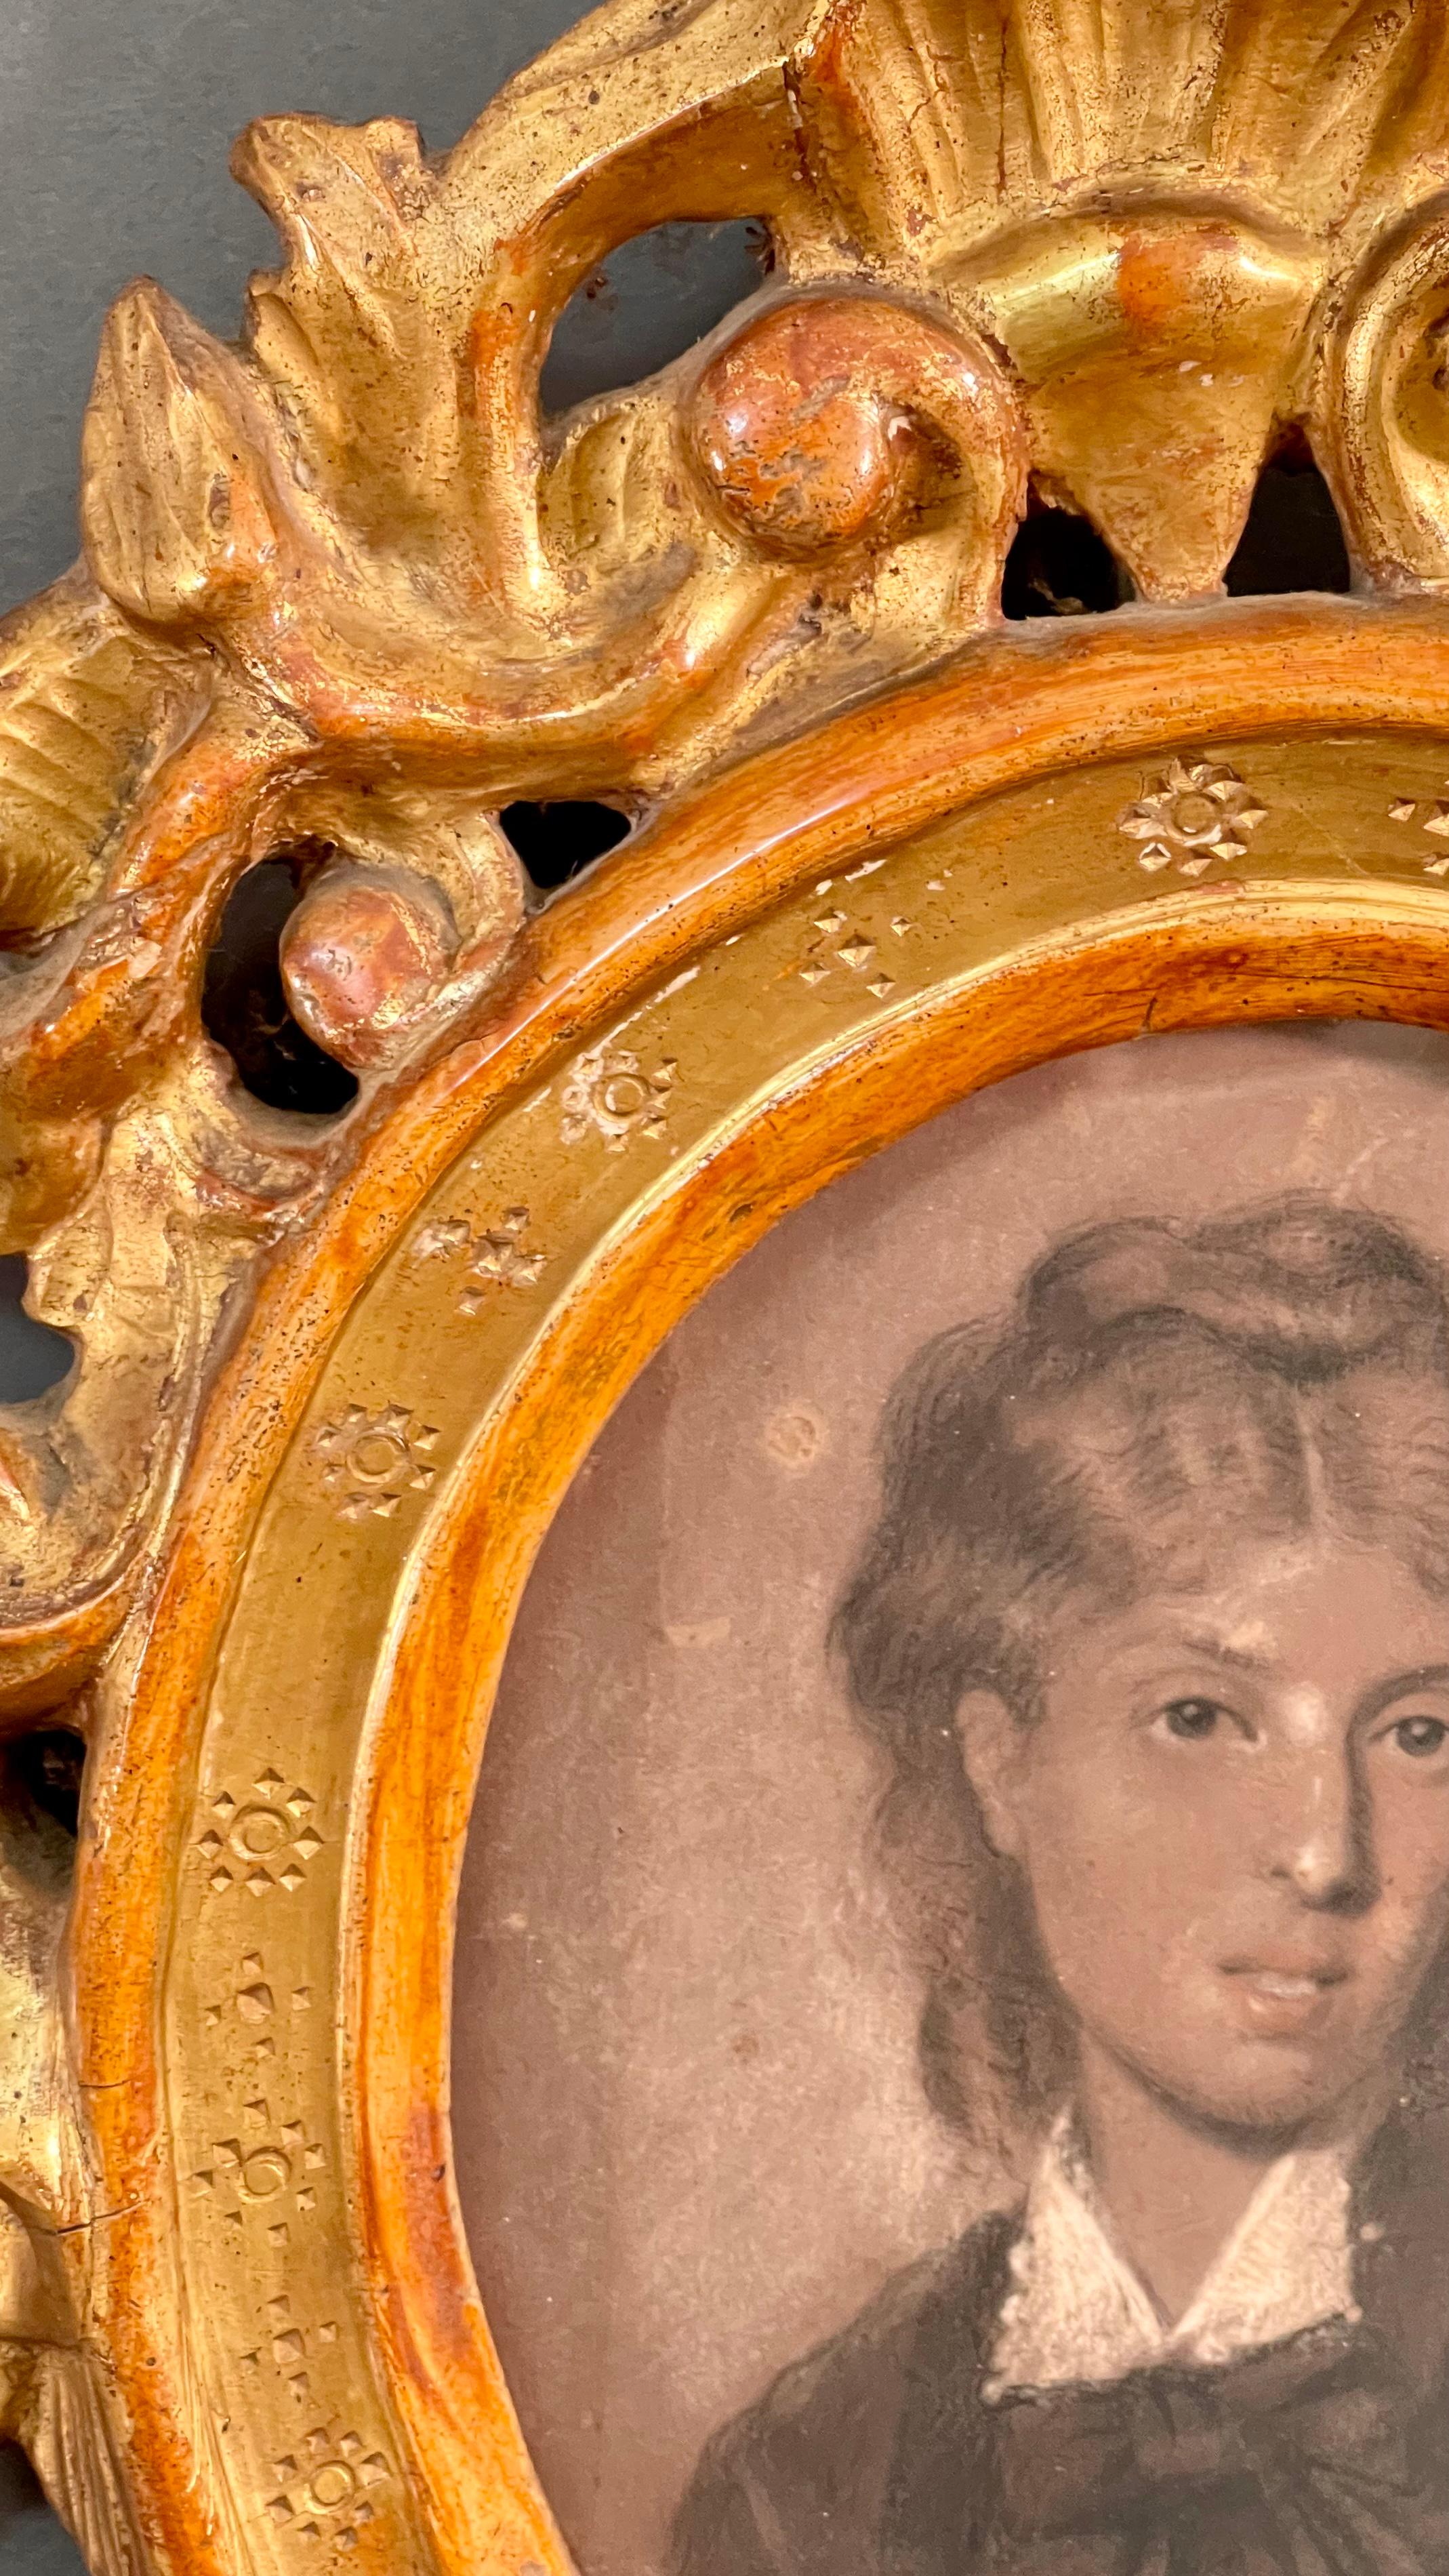 Très beau pastel sur papier représentant une jeune fille noble.

Ce tableau, encore jamais commercialisé, provient d'une collection privée et est agrémenté d'un imposant cadre du XVIIIe siècle en bois doré, en quasi-parfait état.

La peinture est